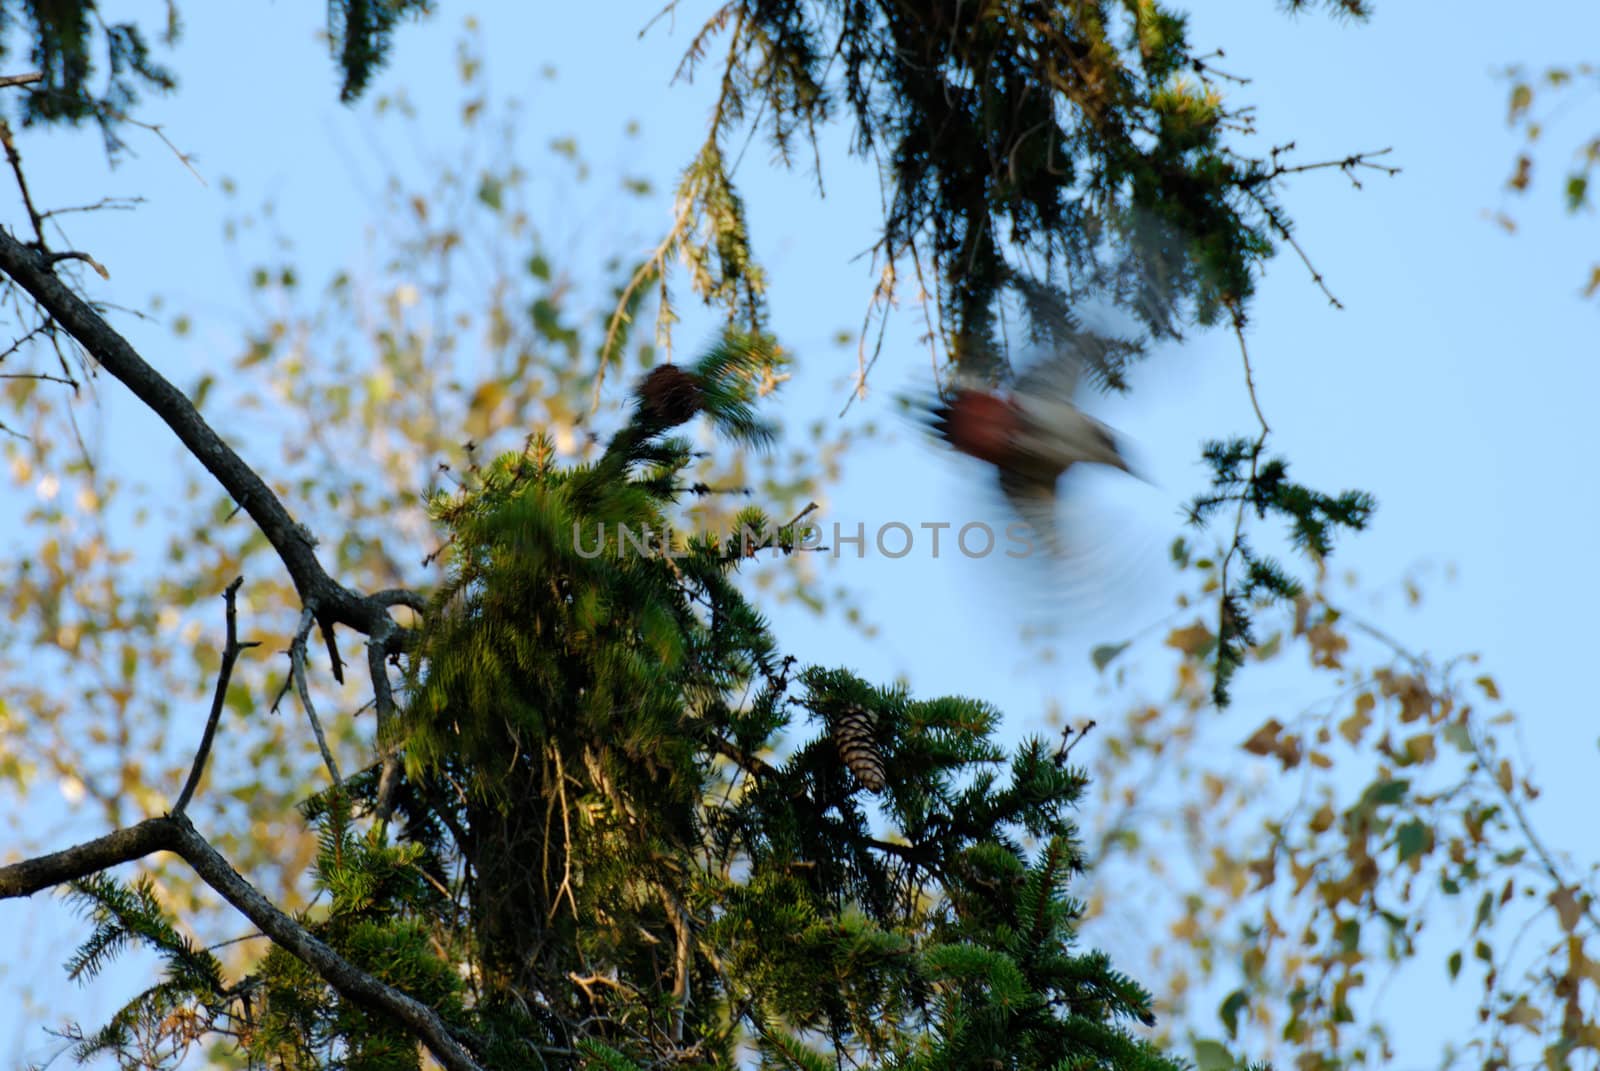 A woodpecker flying away from a fir branch
